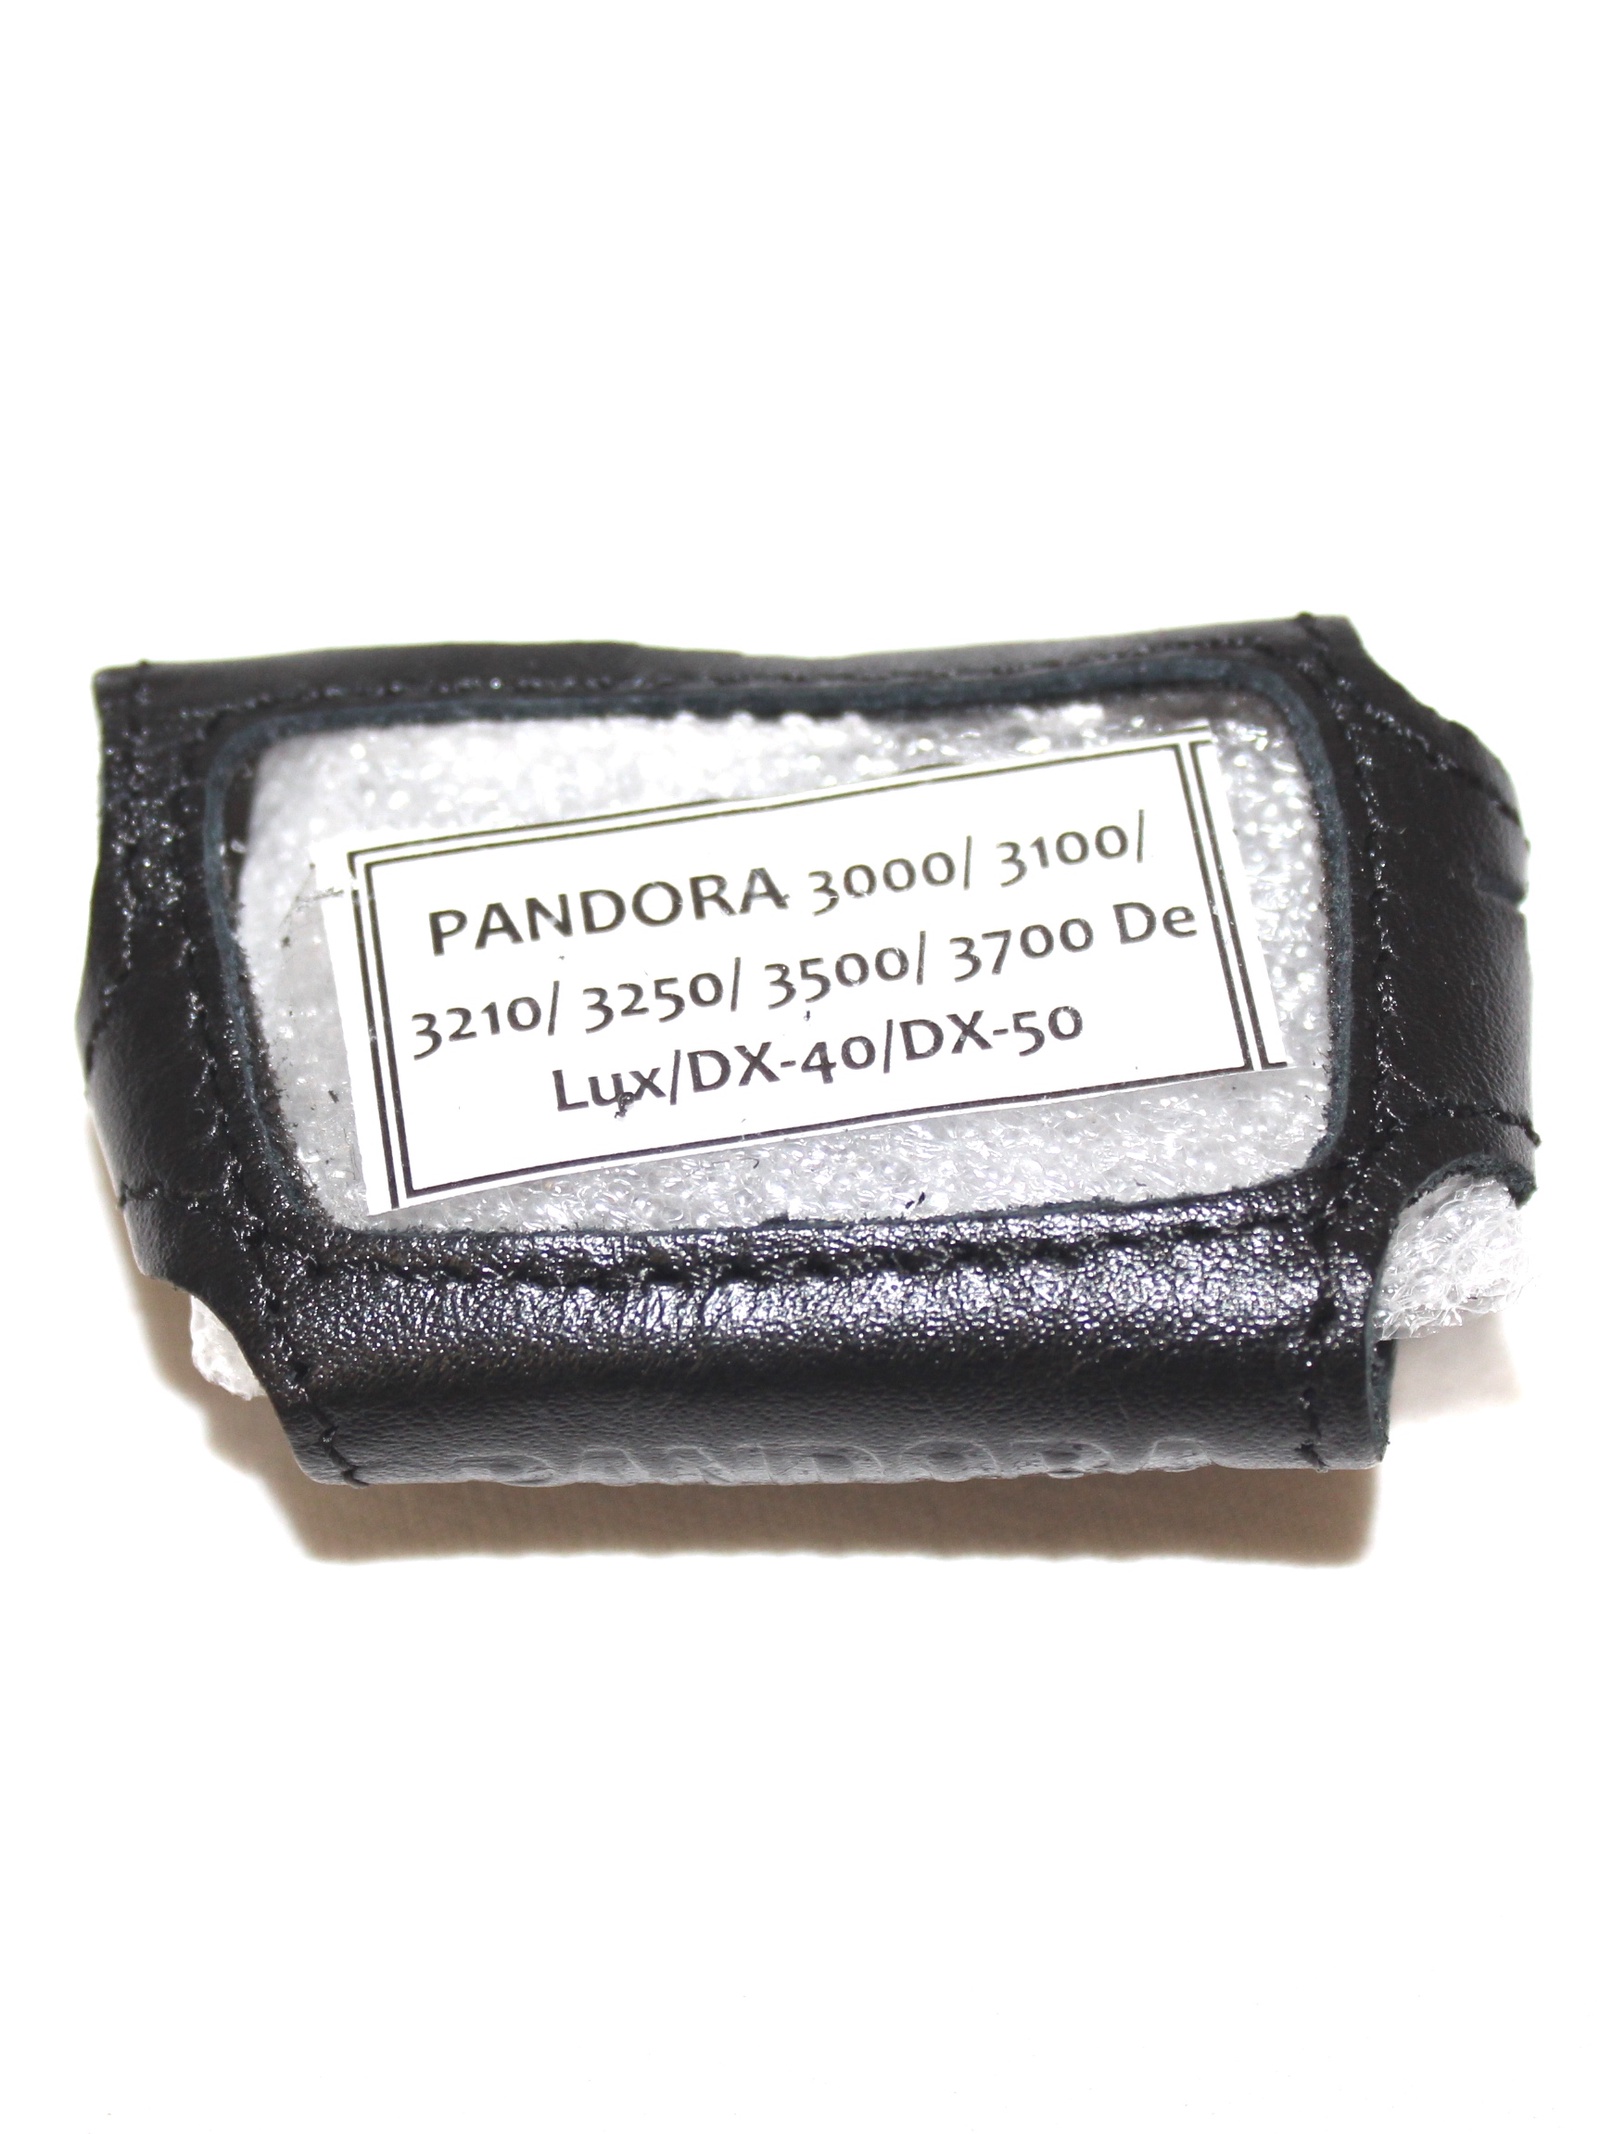 фото Чехол для автомобильного брелка Snoogy PANDORA 3000/3100/3250/3500/3700/3940De Lux/Dx-40/Dx-50